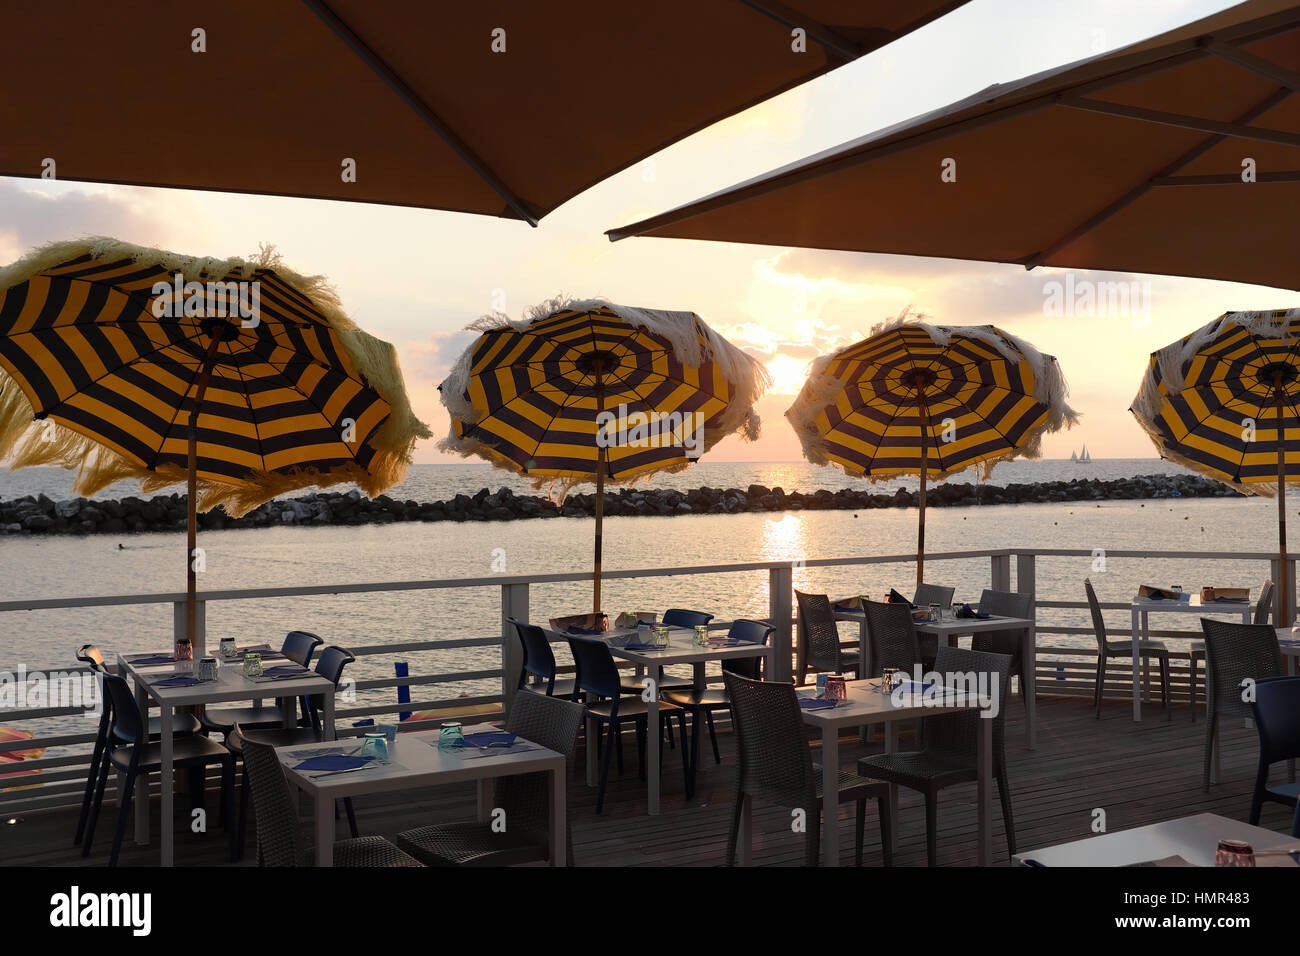 Bar sur la plage au coucher du soleil - restaurant en bord de mer avec vue sur mer à l'heure d'or juste avant le coucher du soleil - Tables et parasols de plage - Marina di Pisa, Italie Banque D'Images